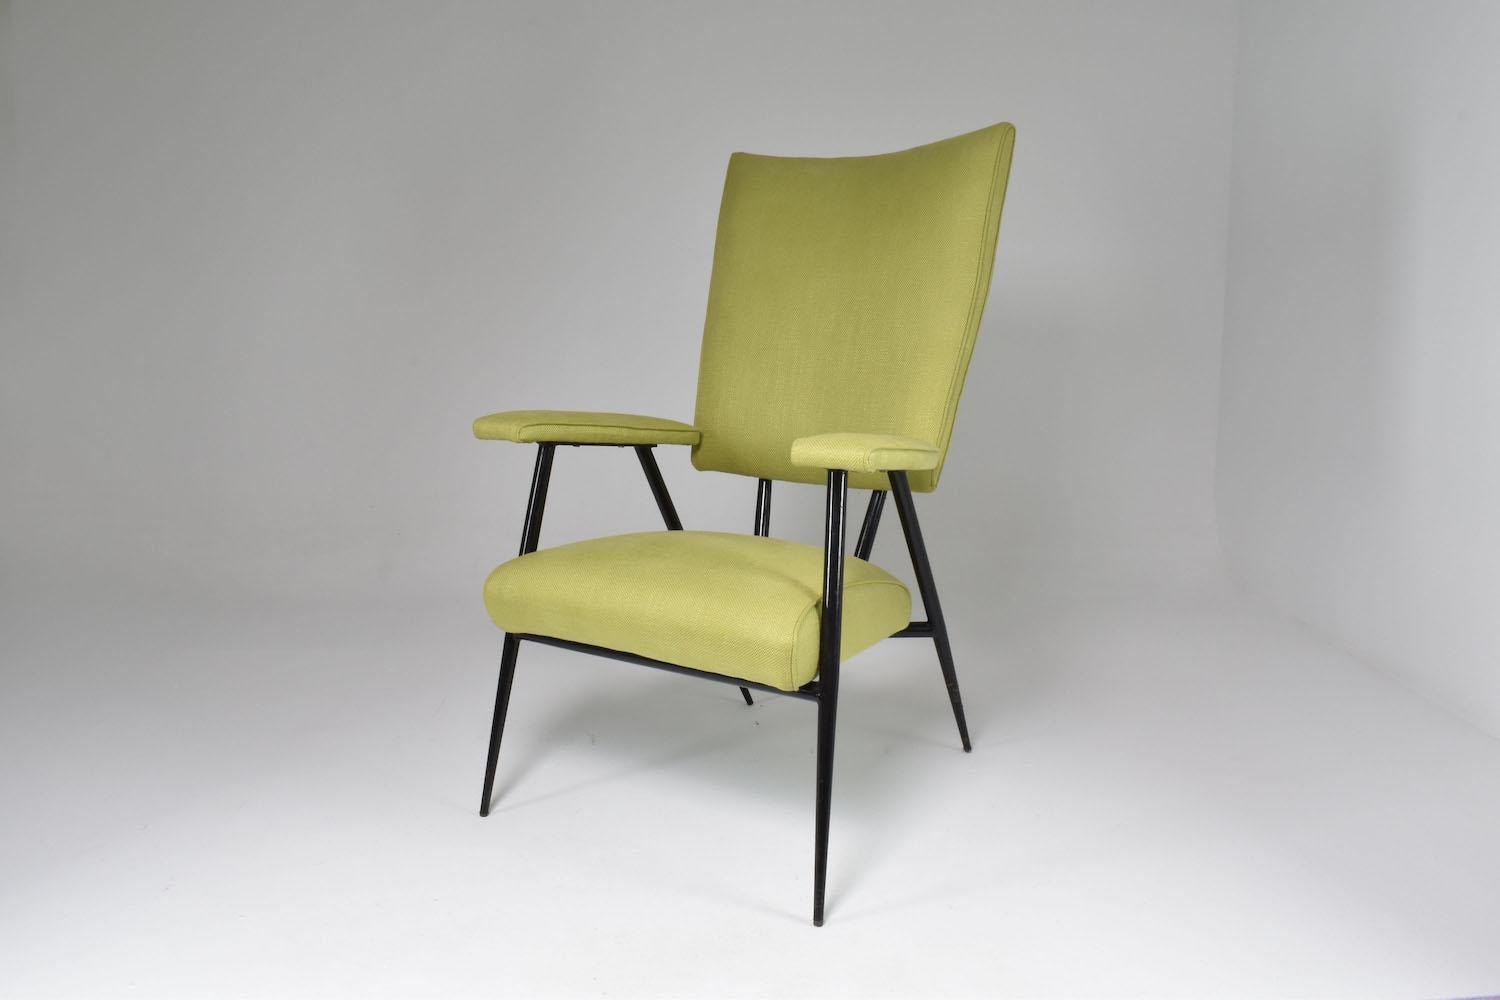 Magnifique chaise de salon ou fauteuil français de collection du milieu du siècle dernier, avec une structure tubulaire en acier re-laqué noir et une tapisserie vert clair. En parfait état de restauration. 
France, vers les années 1950. 


Nous